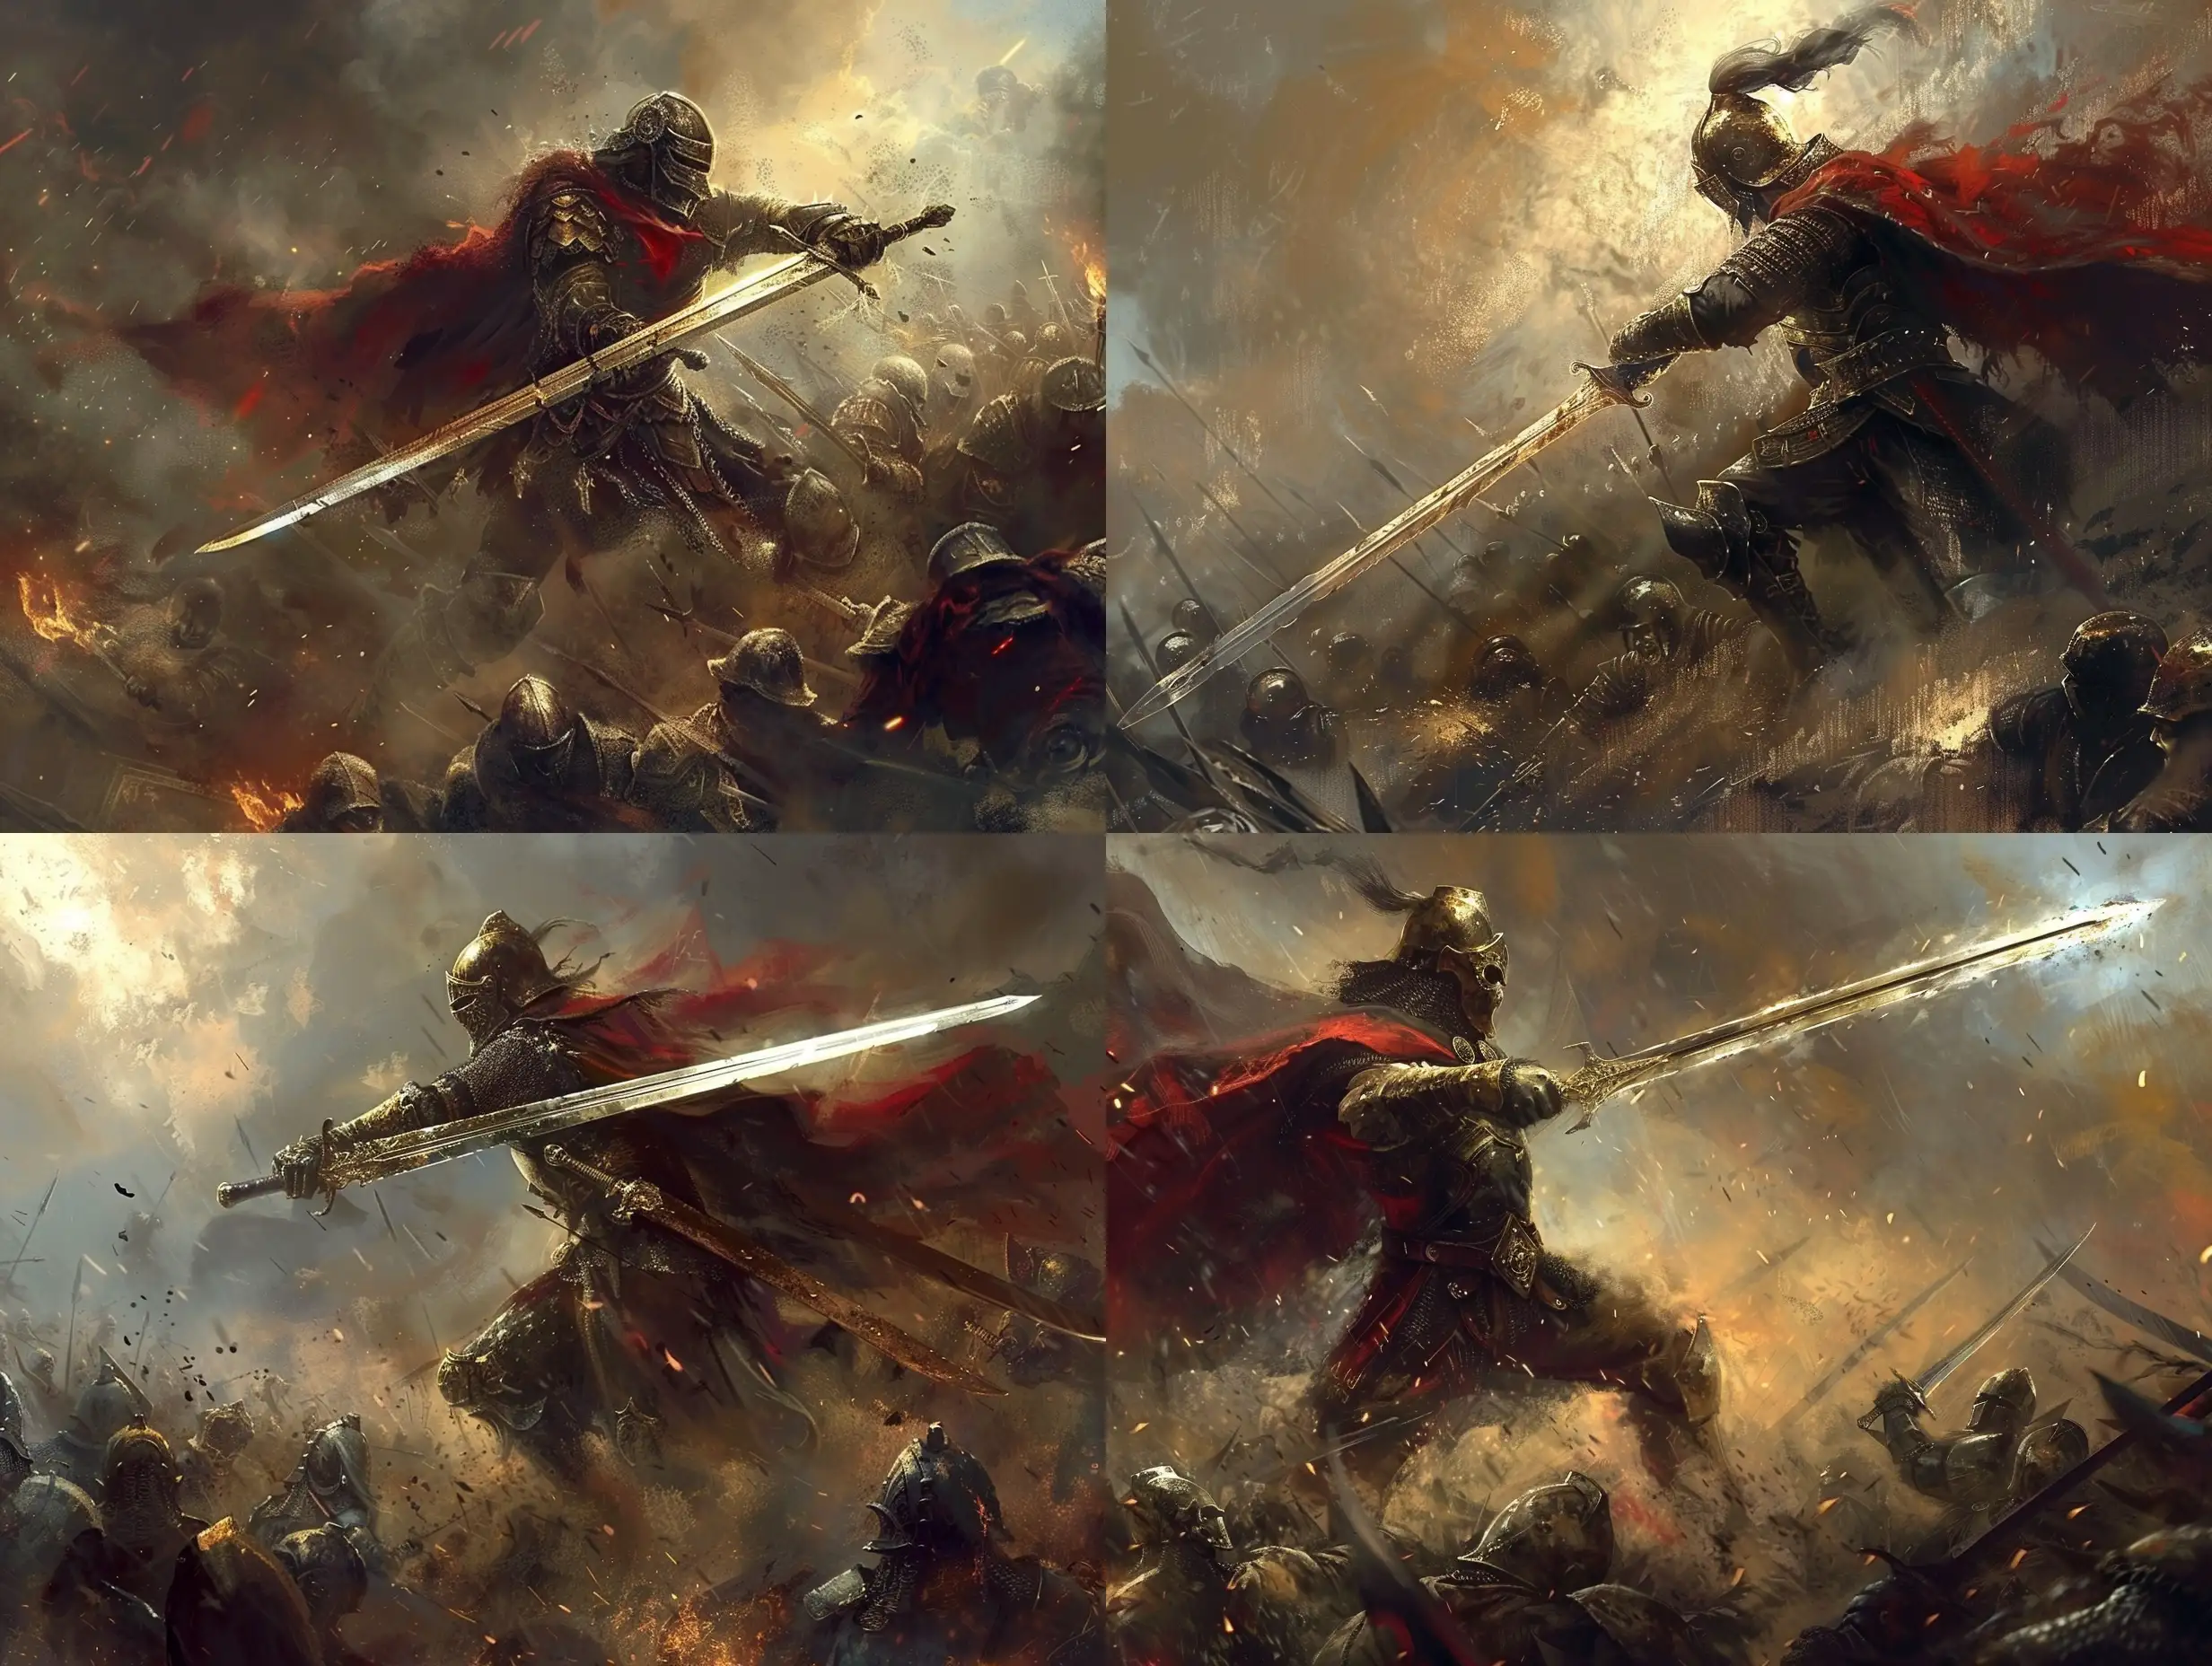 Warrior wilding a majestic sword, fighting hordes of enemies